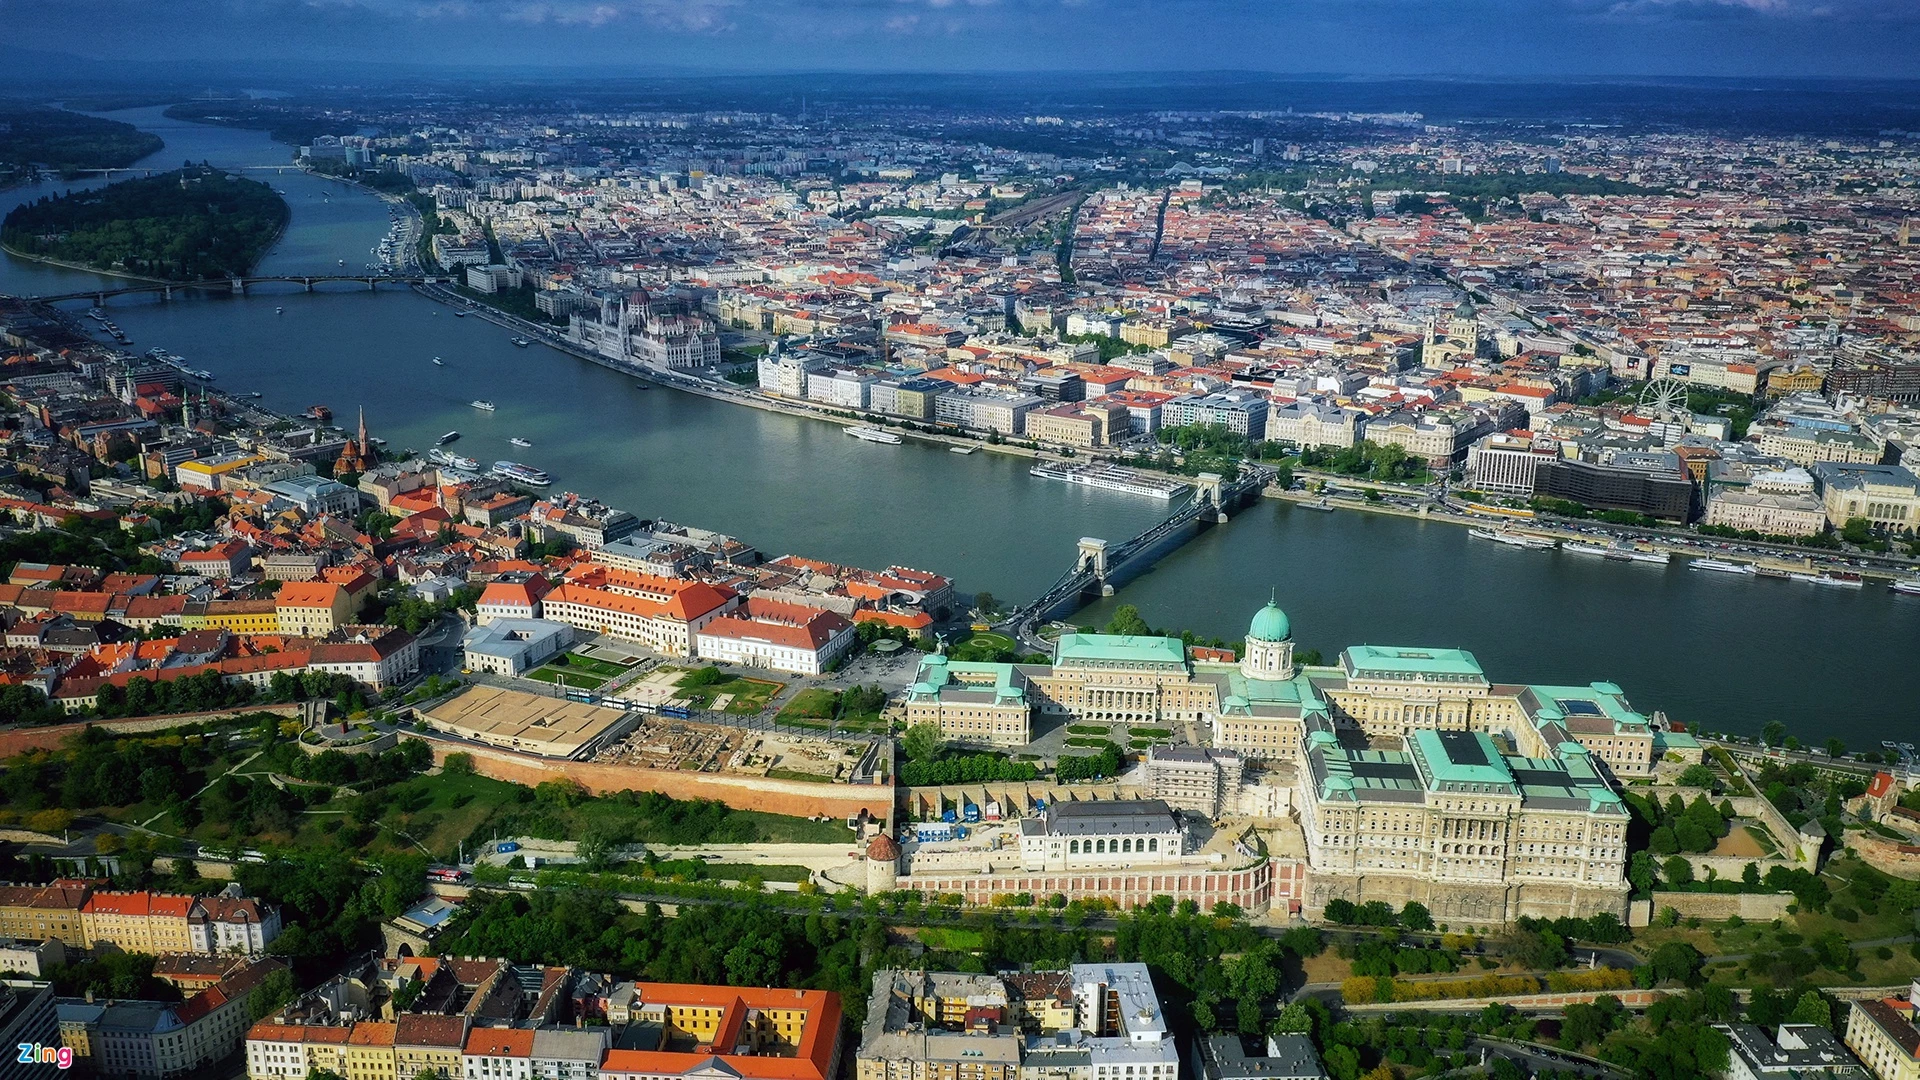 Tháng 11 dạo quanh Budapest. Những ai đặt chân đến Hungary thường phải qua Budapest và ngắm dòng sông Danube. Ở đây nổi tiếng nhất có cây cầu Xích cổ nhất thủ đô, tên chính thức là Szechenyi Lanchid, cũng là tên của vị bá tước đã bỏ tiền xây dựng nó. Cho đến nay, cây cầu này vẫn được tôn vinh là biểu tượng của Hungary.